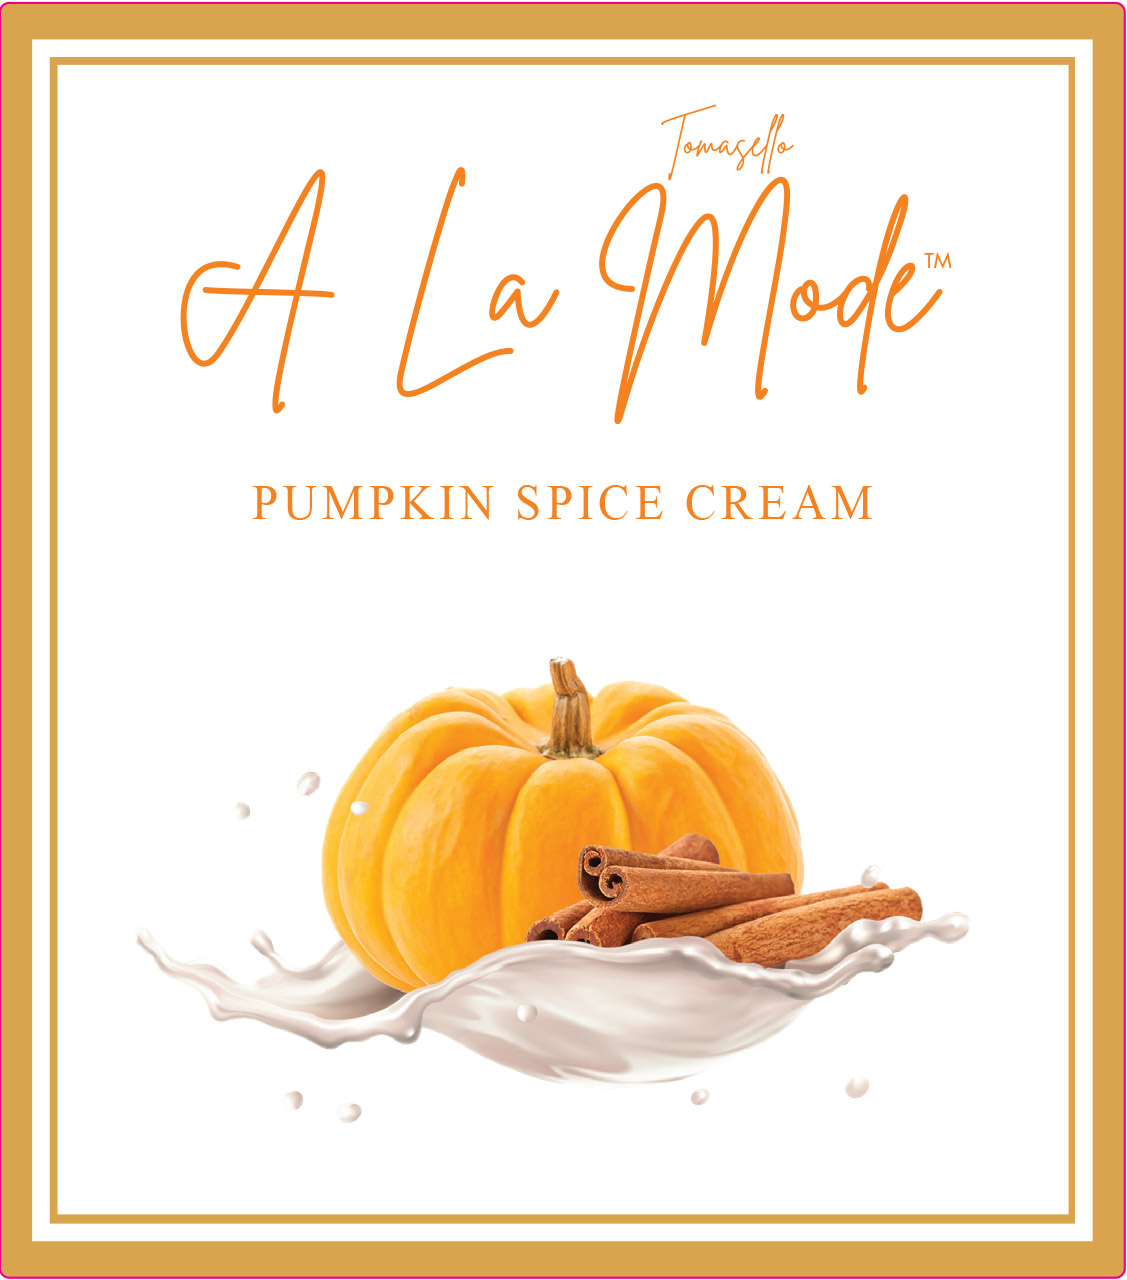 Product Image for Tomasello A La Mode Pumpkin Spice Cream